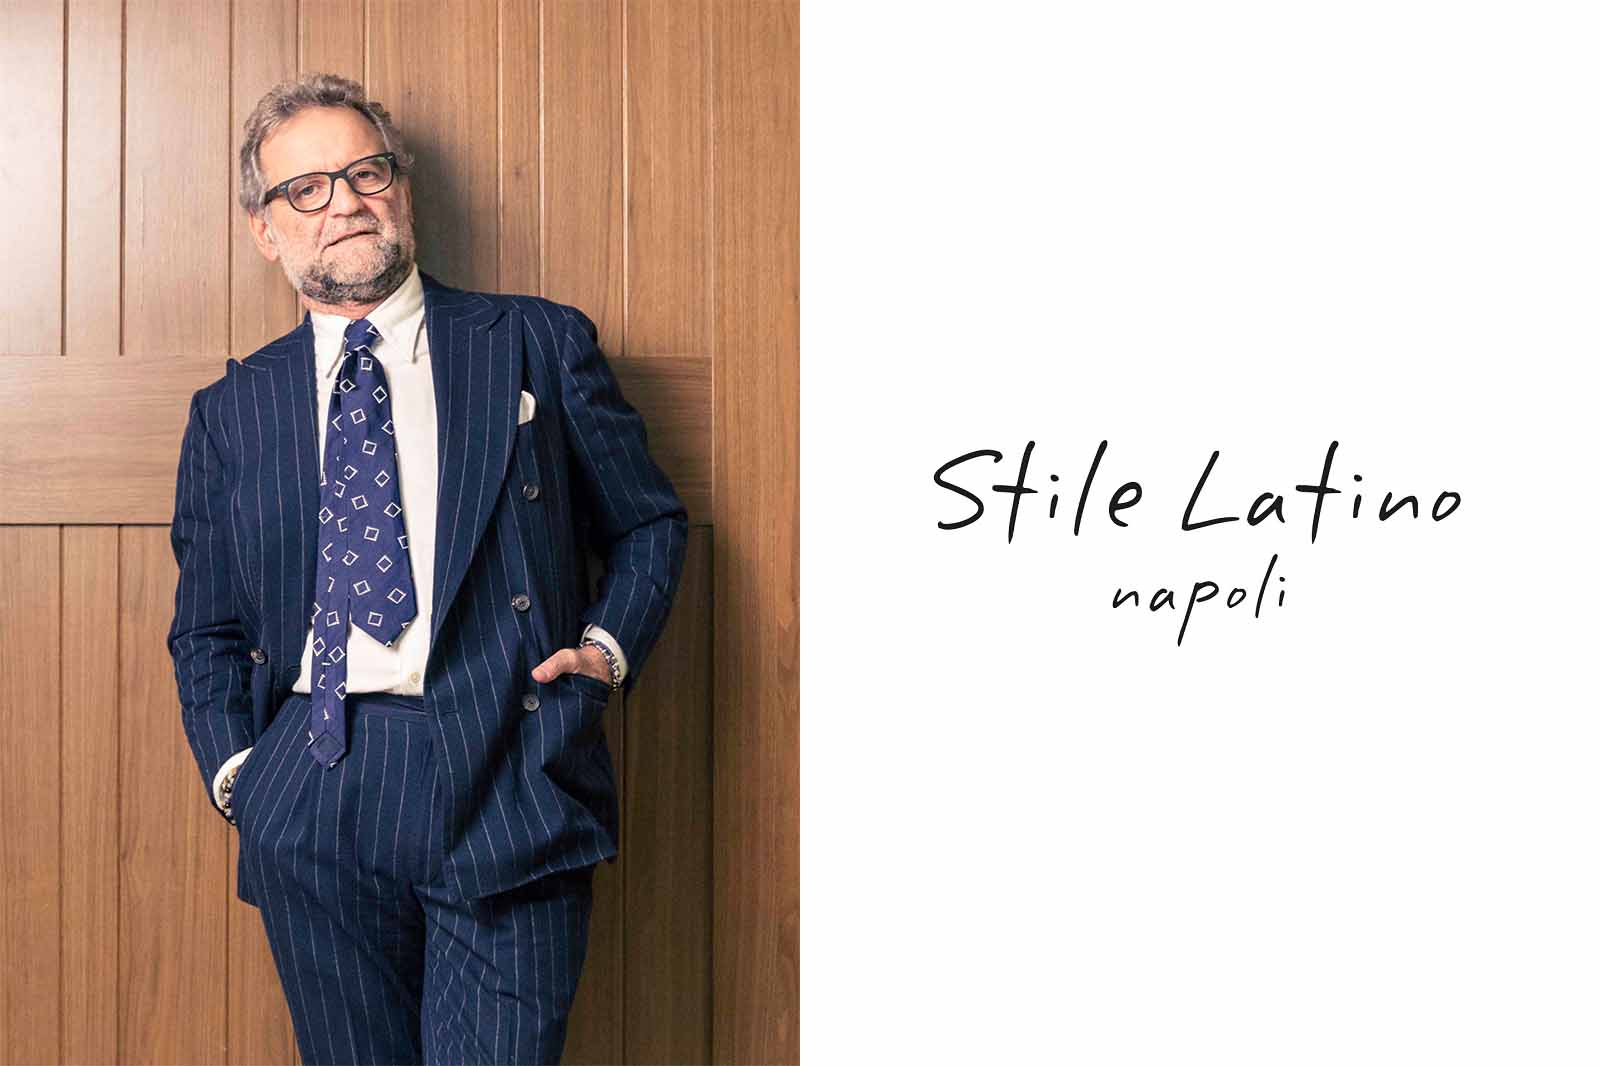 Stile Latino/スティレ ラティーノ＞｜新時代のナポリスタイルを体現